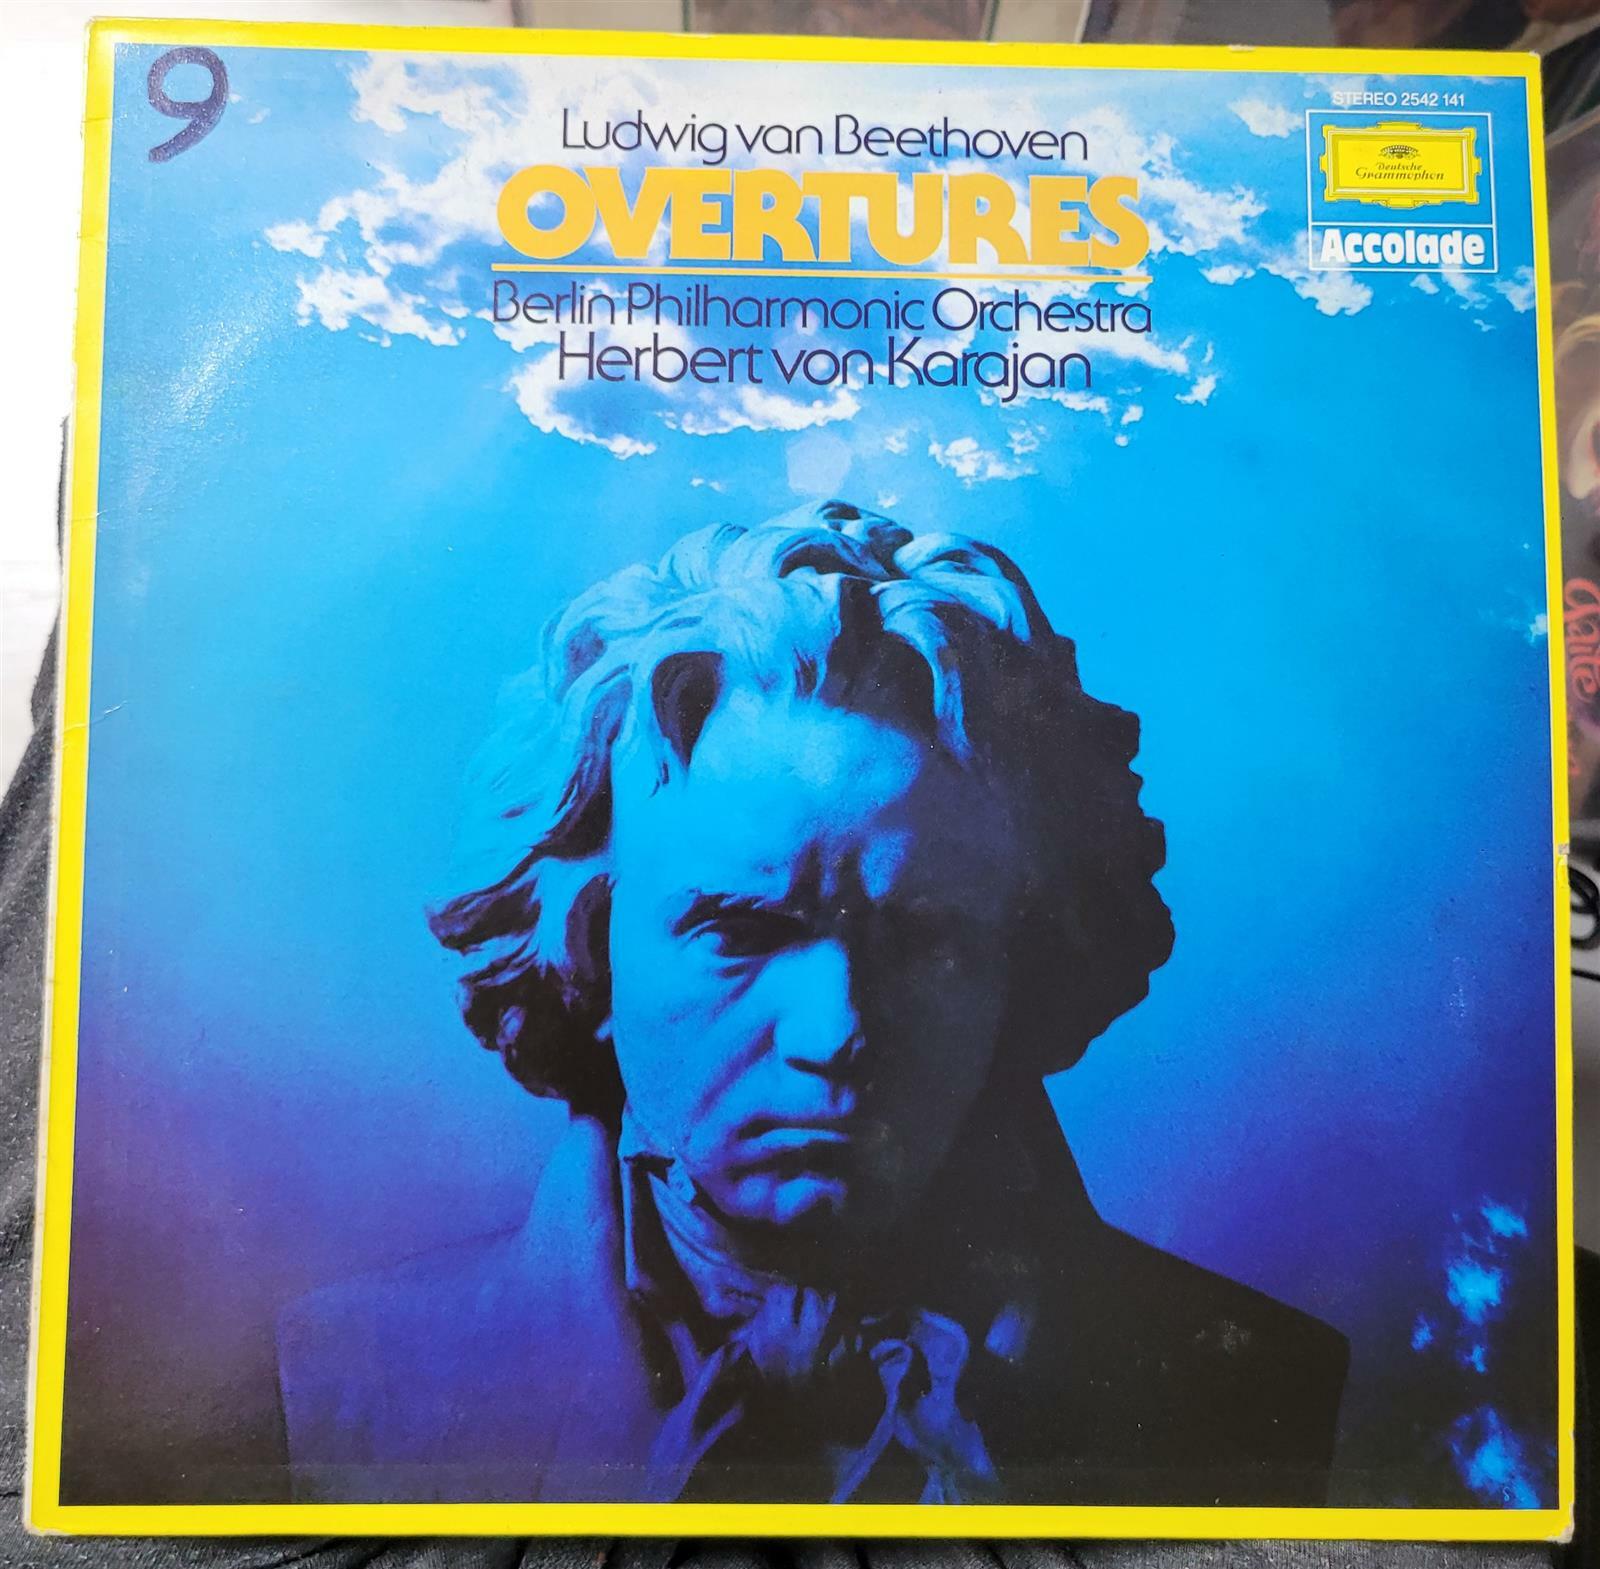 [중고] [수입][LP] Karajan - 베토벤 : 서곡집 (Beethoven : Overtures) (영국)